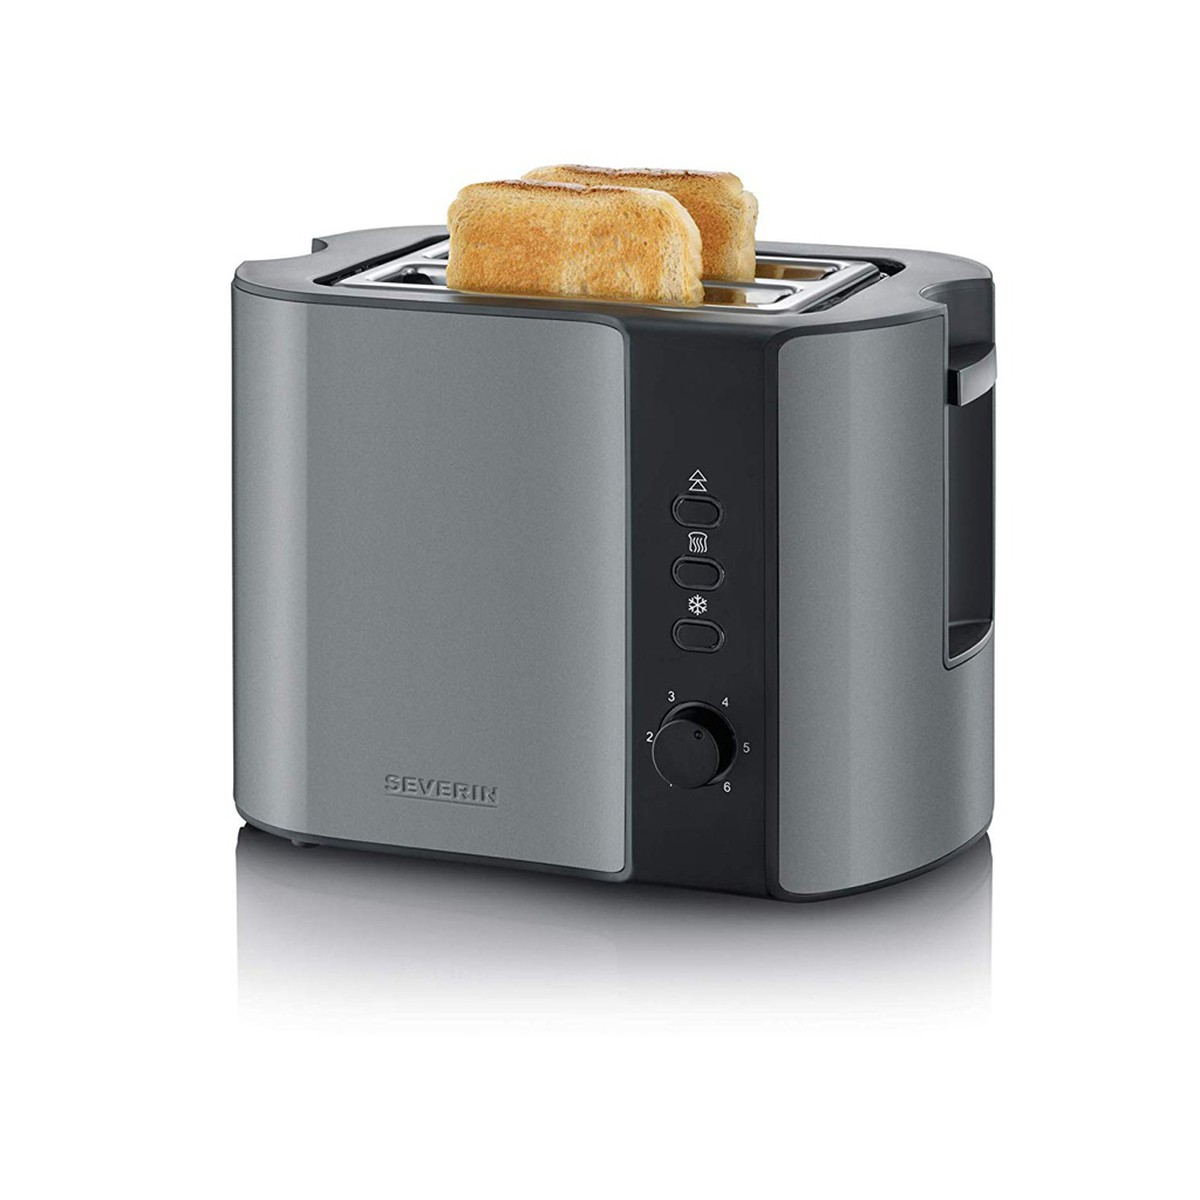 SEVERIN AT9541 Toaster / Toaster Schlitze: grau-met./schwarz Schwarz 2,0) Grau-metallic Watt, (860